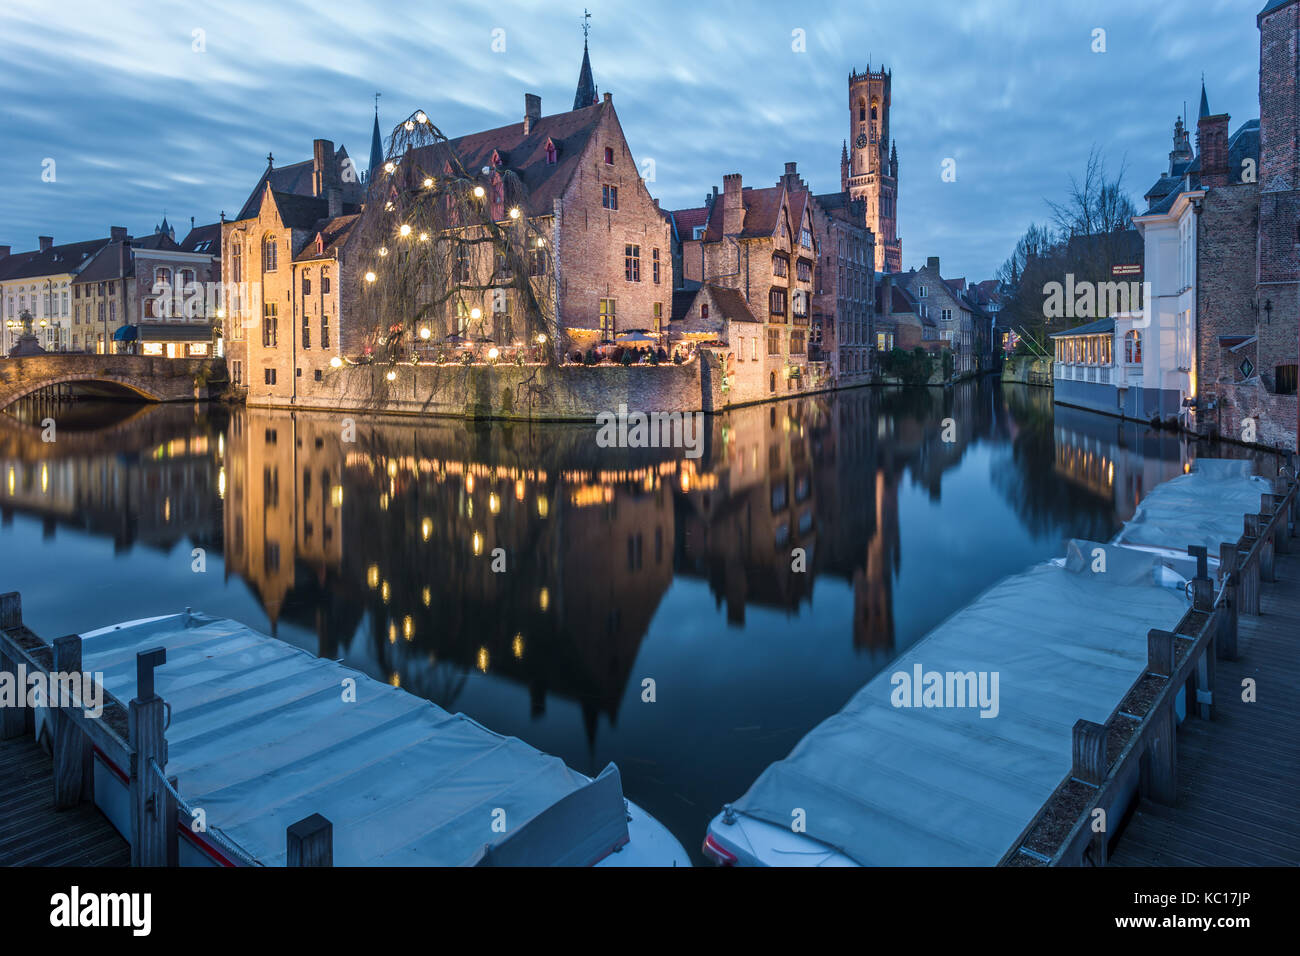 La célèbre vue sur le beffroi de la Rozenhoedkaai à Bruges, Belgique au crépuscule Banque D'Images